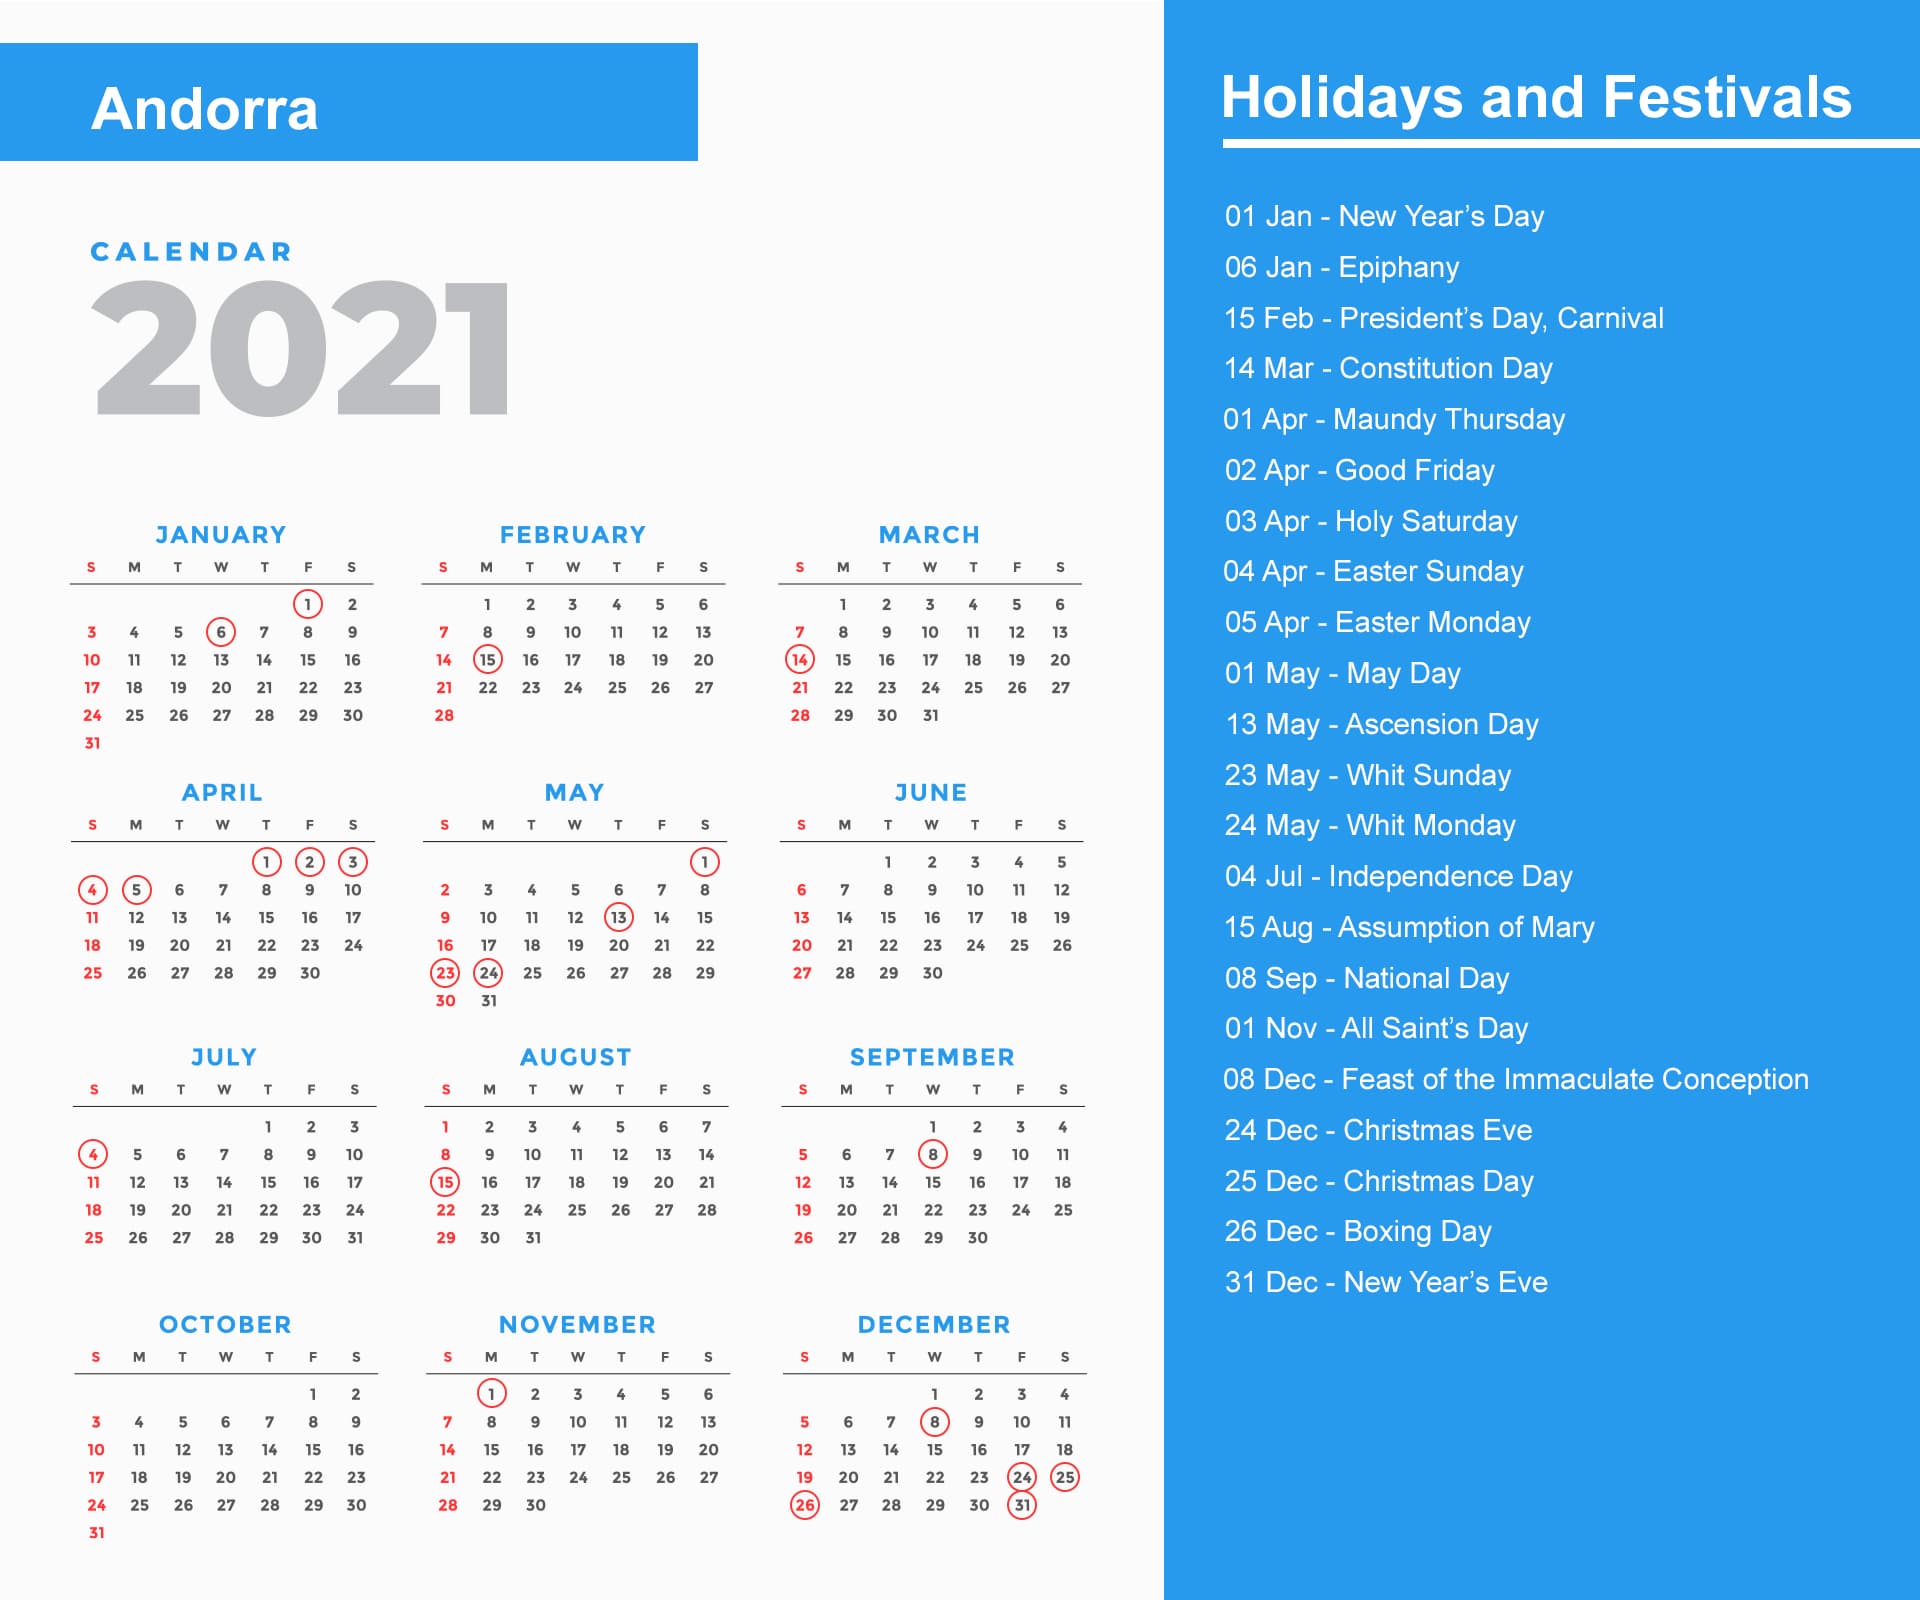 Andorra Holidays Calendar 2021